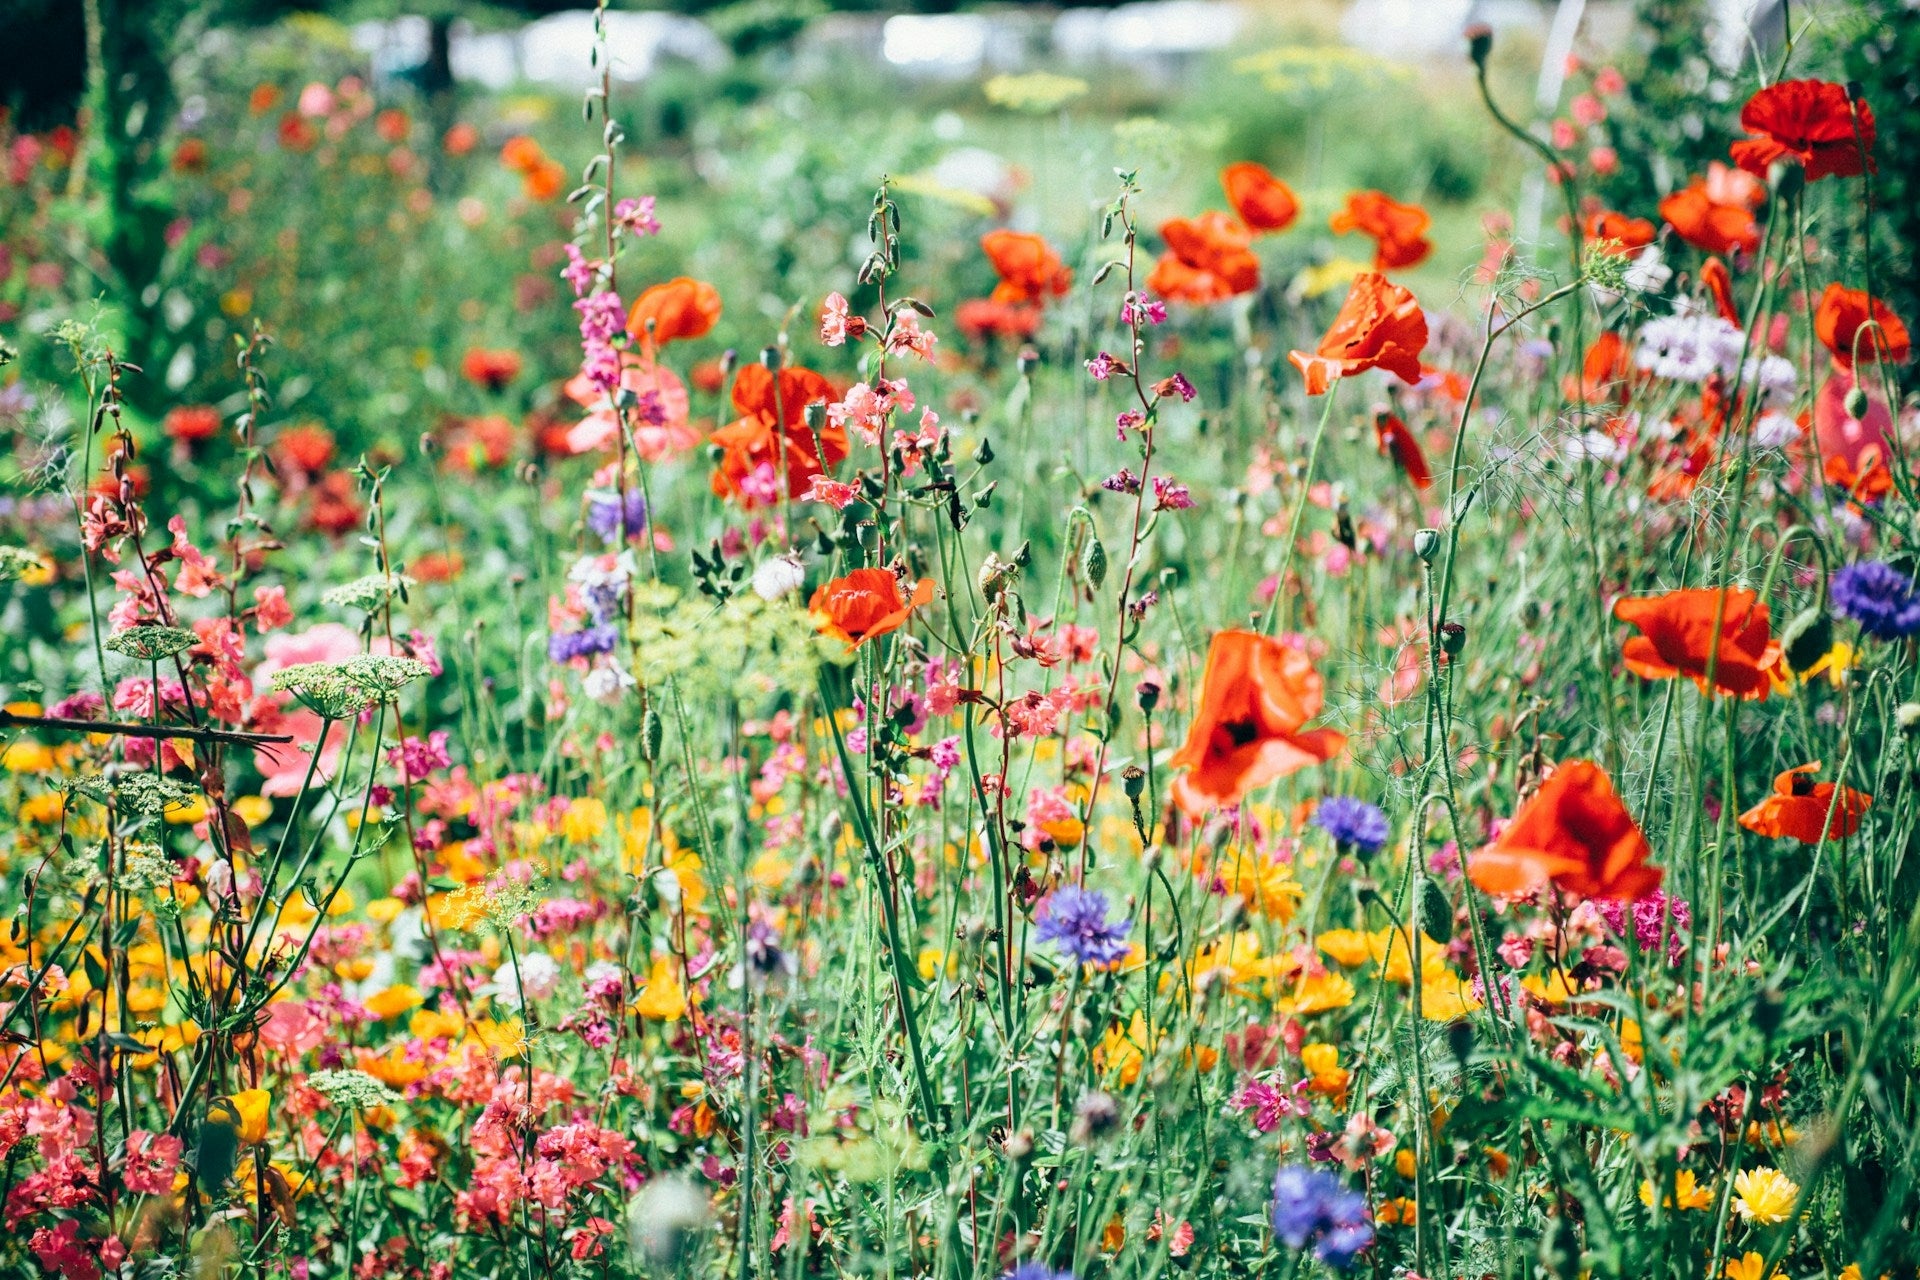 A beautiful field of flowers